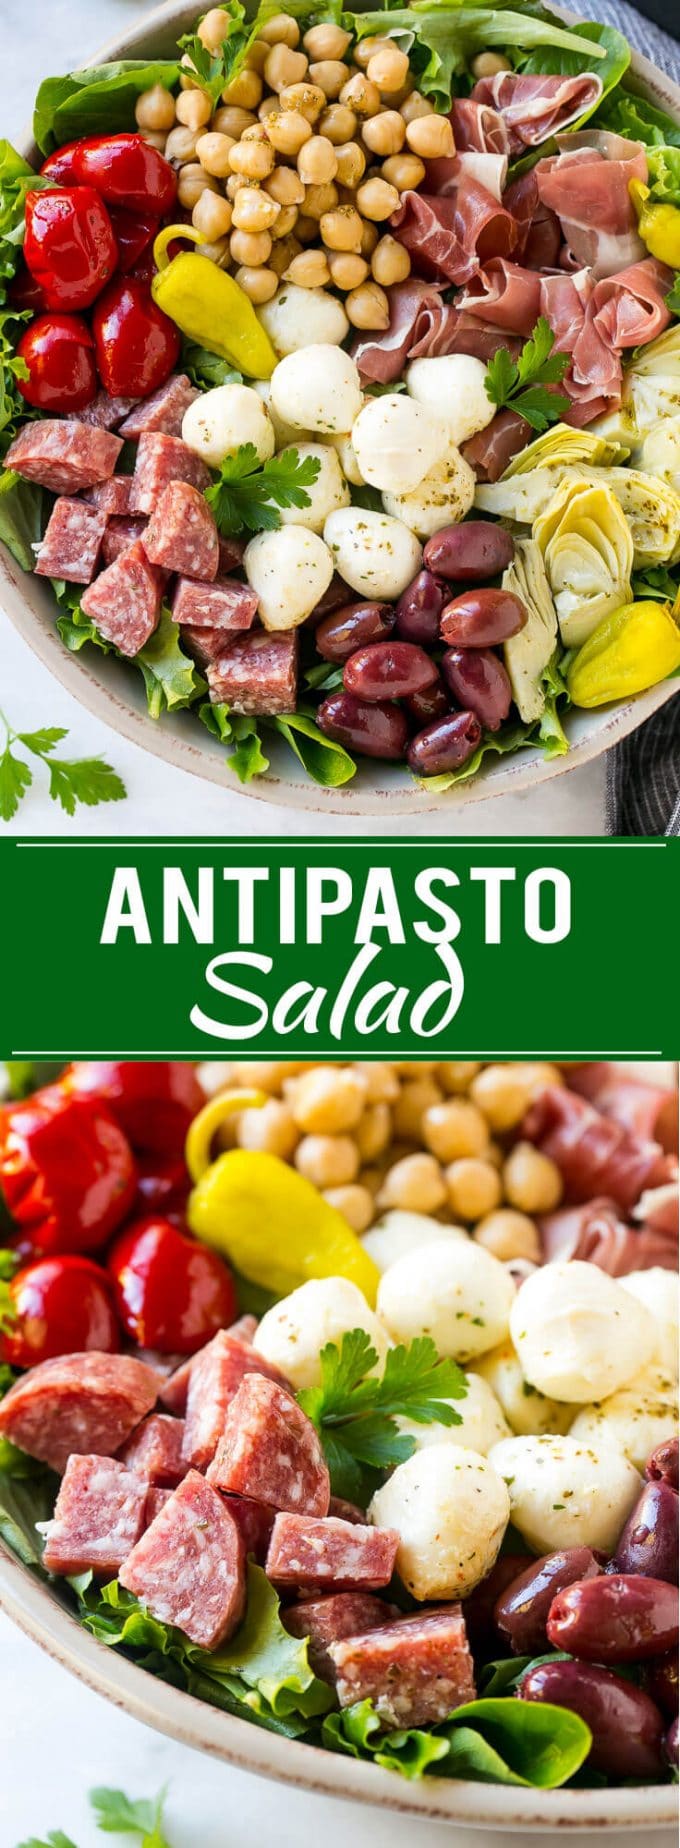 Antipasto Salad Recipe | Italian Salad | Main Course Salad | Antipasto Recipe #salad #salami #italianfood #dinner #lunch #dinneratthezoo